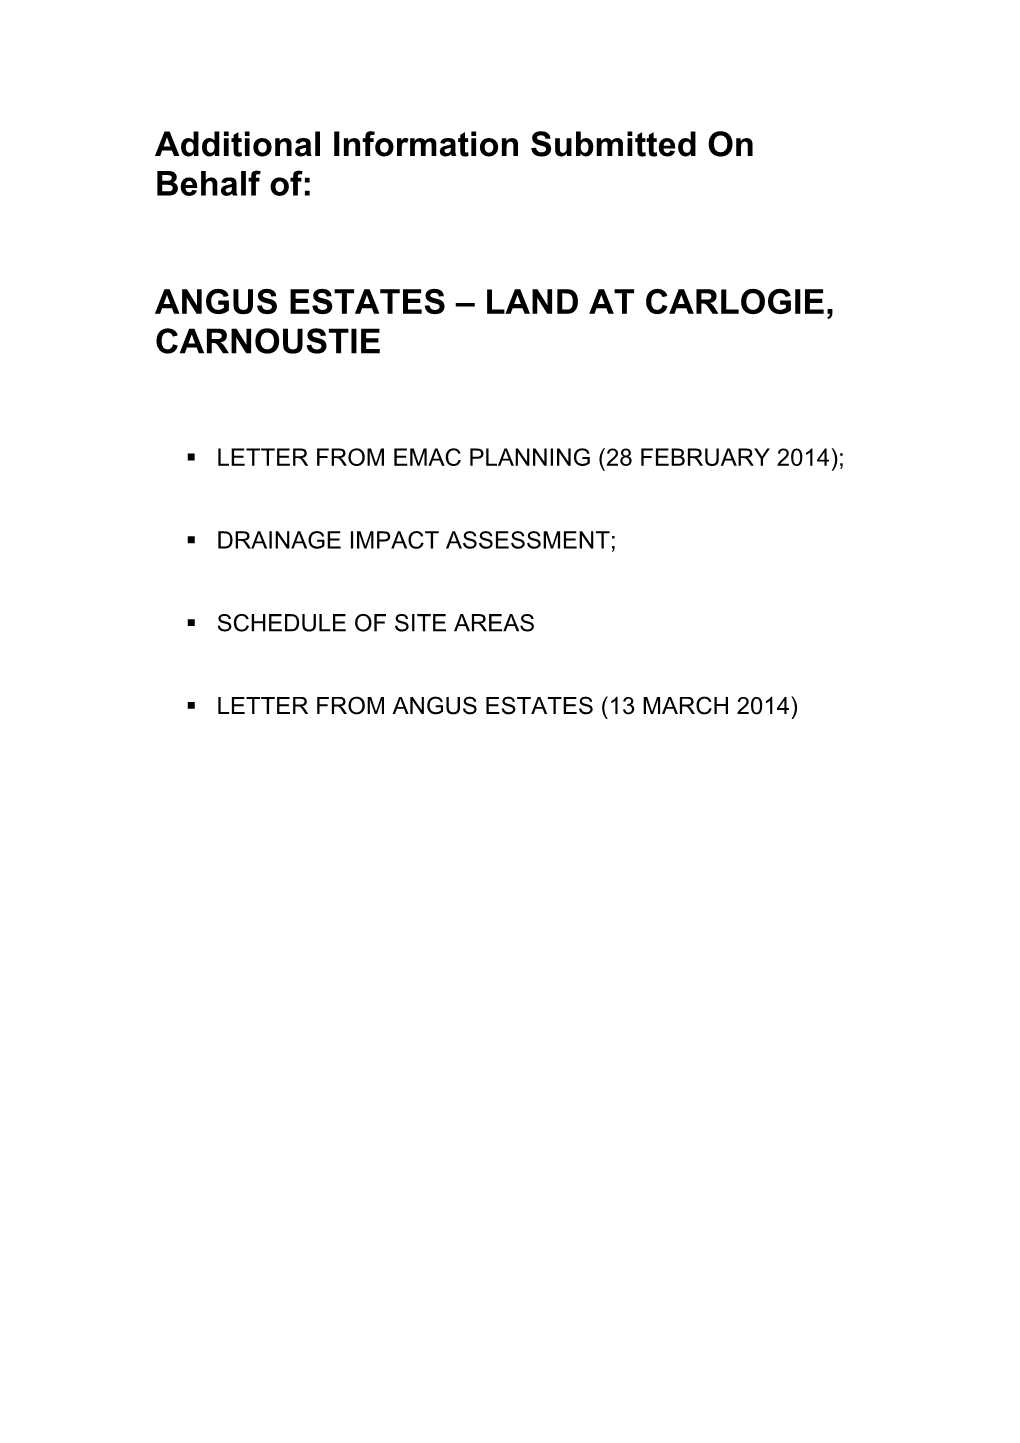 Angus Estates – Land at Carlogie, Carnoustie